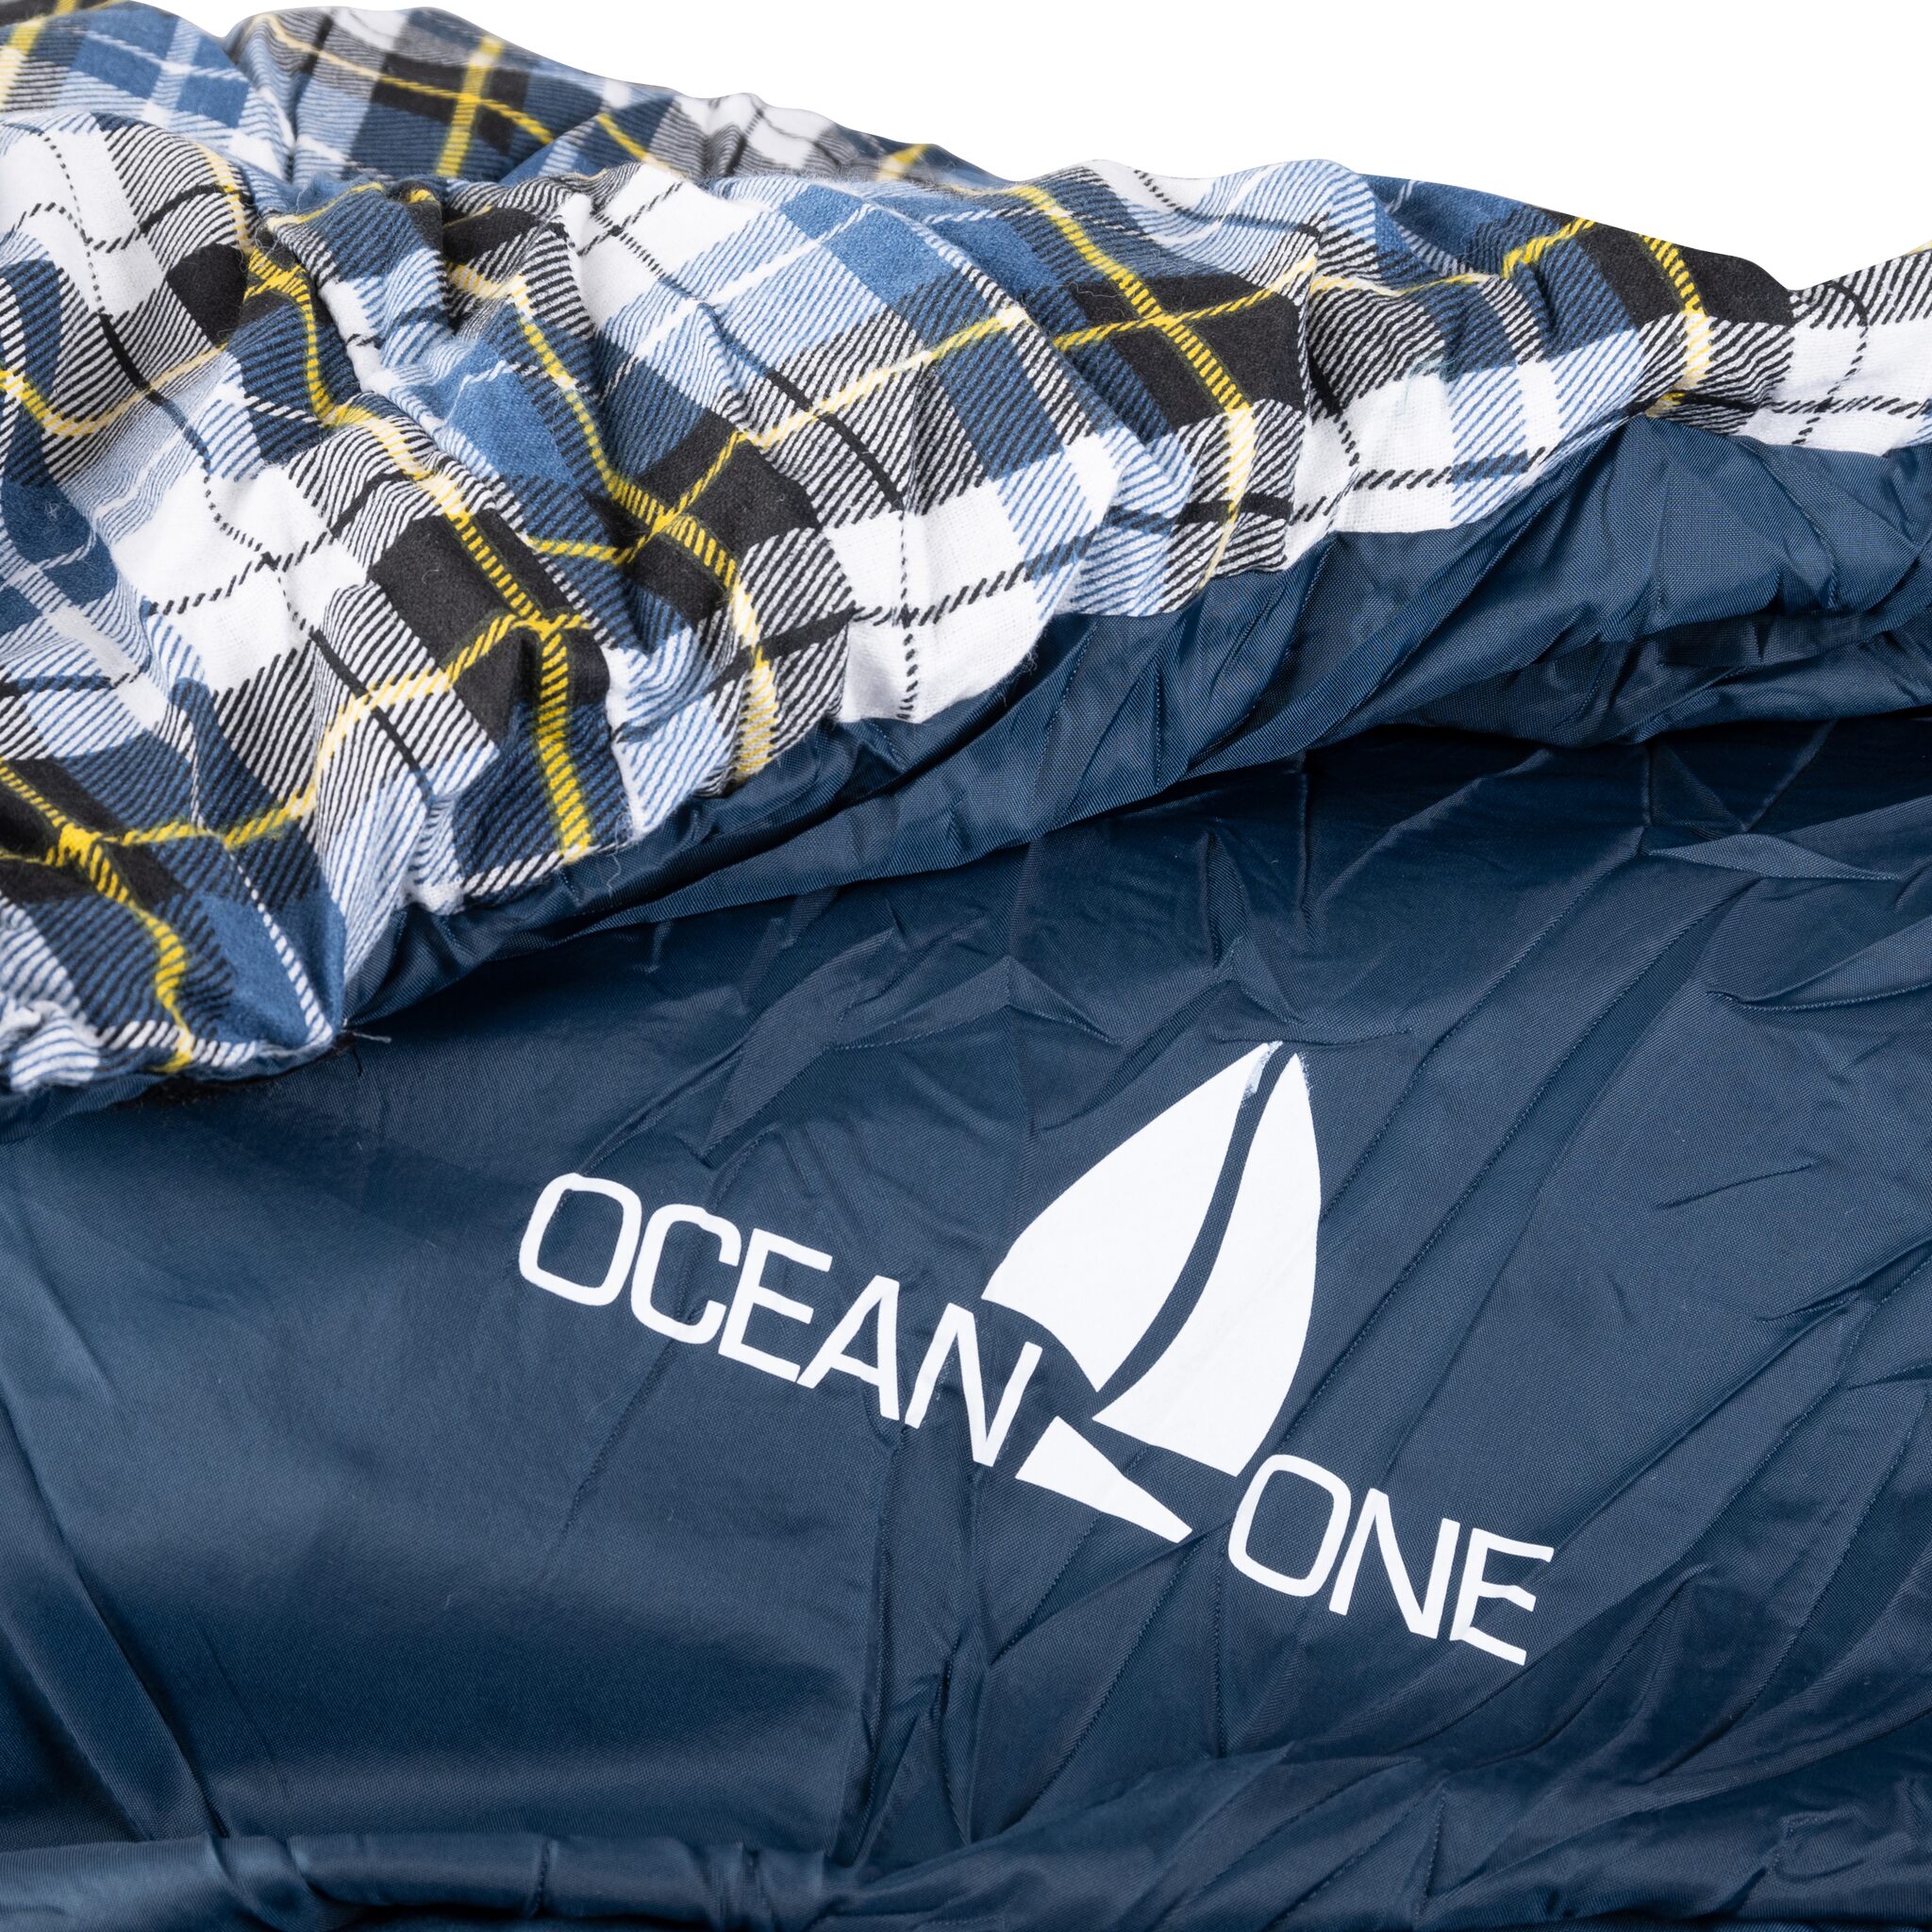 OCEAN ONE sleeping bag YACHT DECK